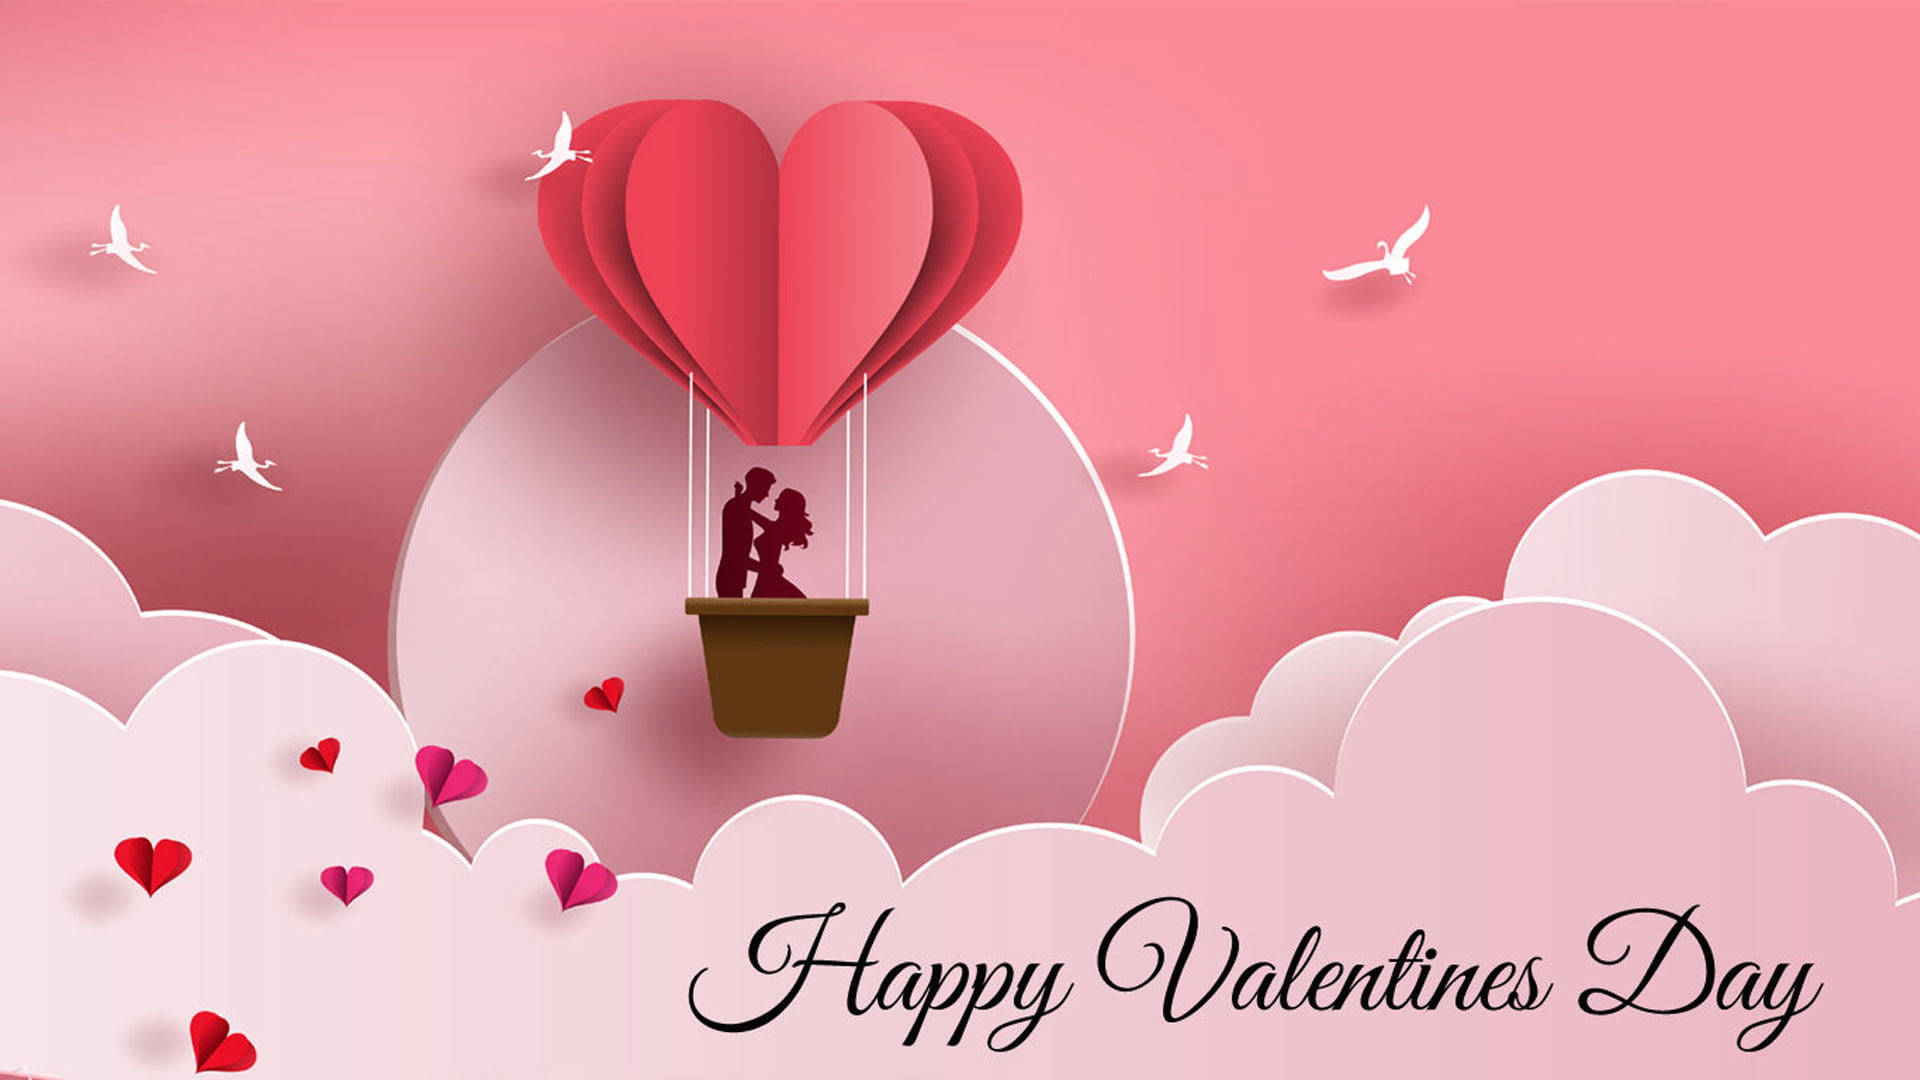 Happy Valentine’s Day Hot Air Balloon Background